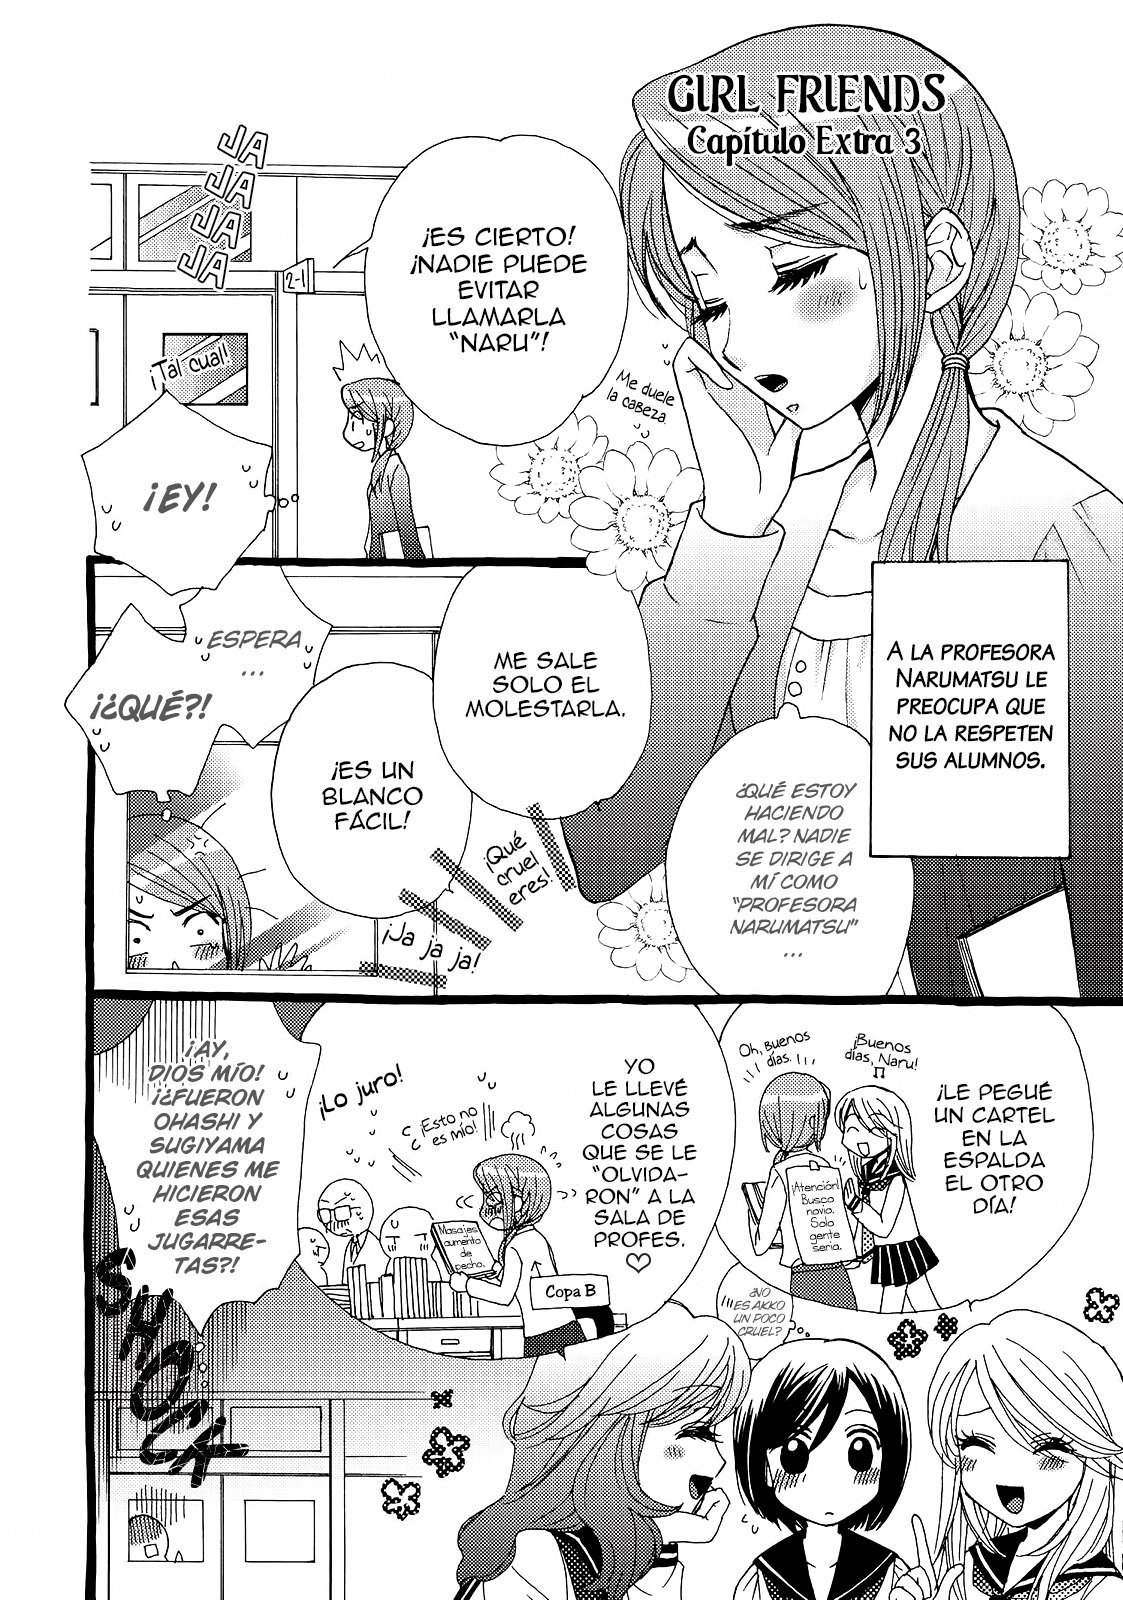 Leer manga Girl Friends - capítulo #14 en línea | Leer manga en línea ...